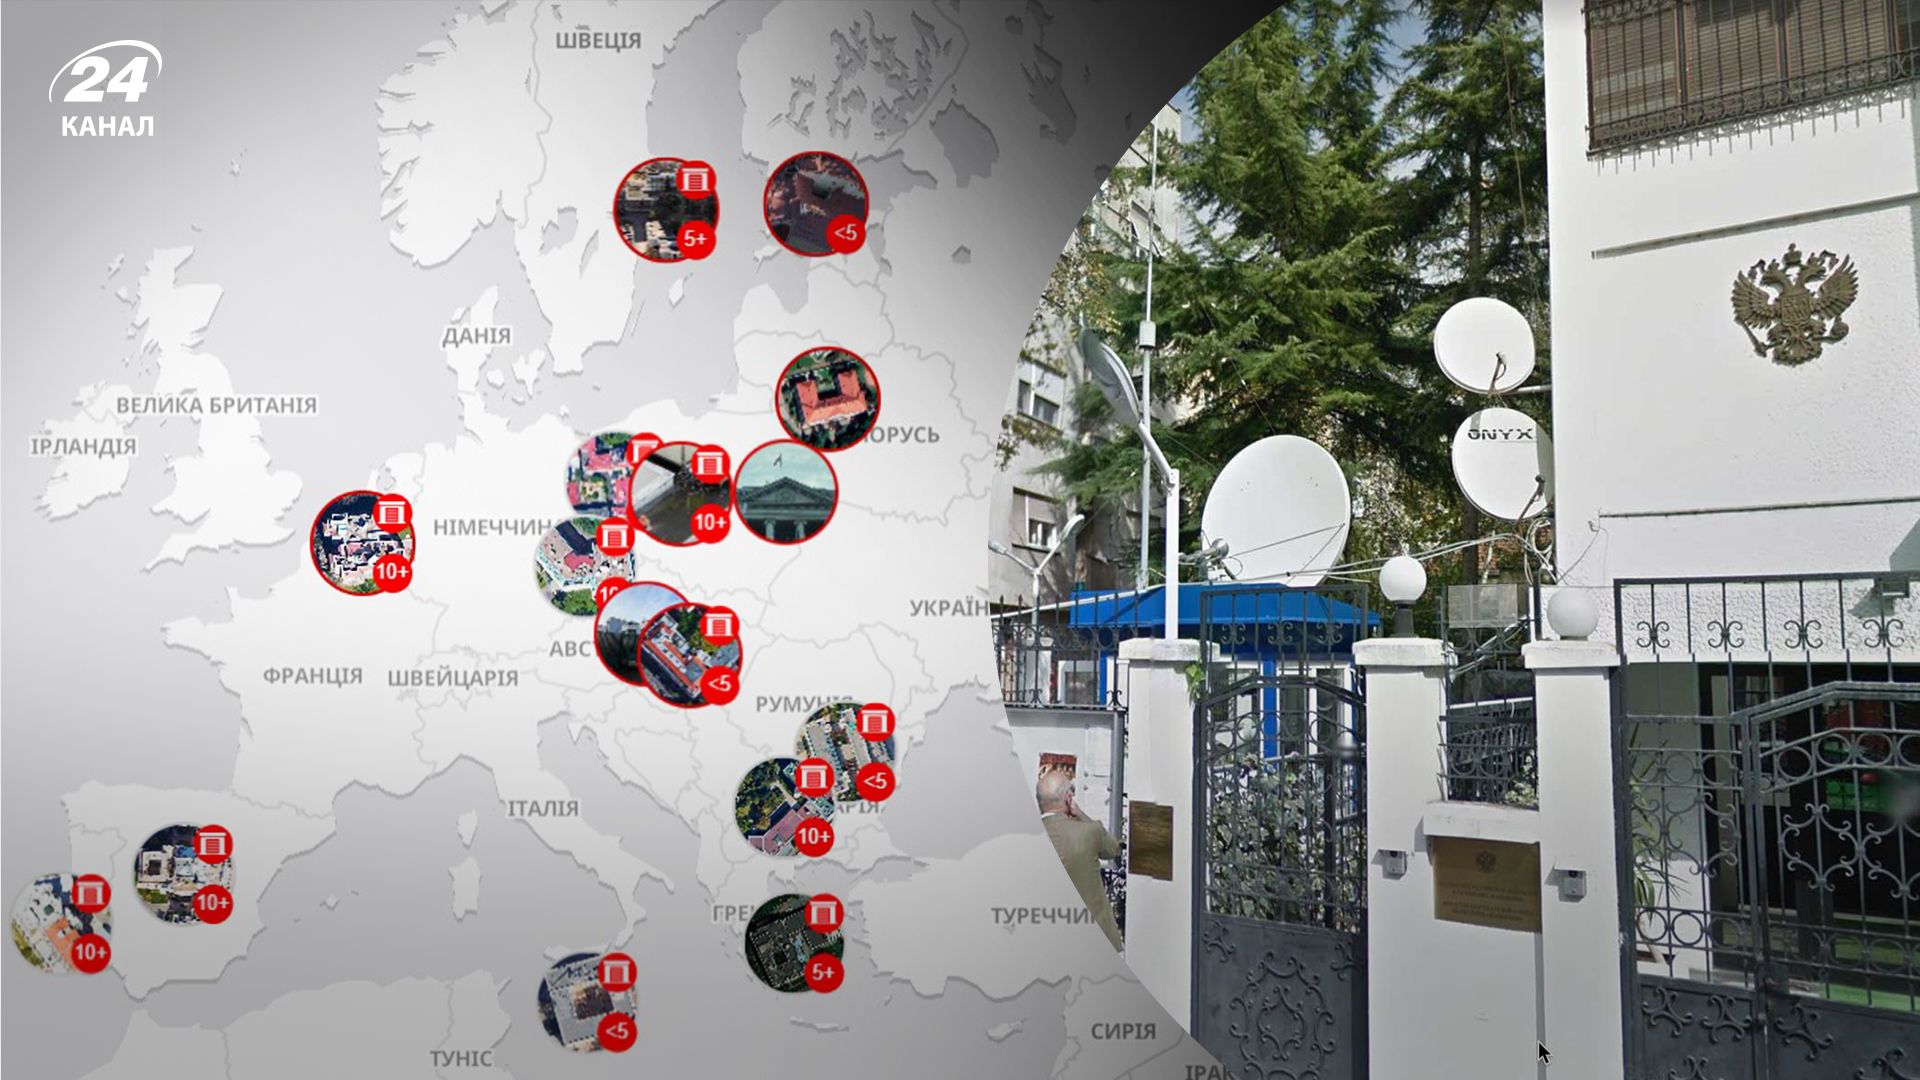 Спецслужби Росії встановили в країнах Європи систему стеження на посольствах, – ЗМІ - 24 Канал